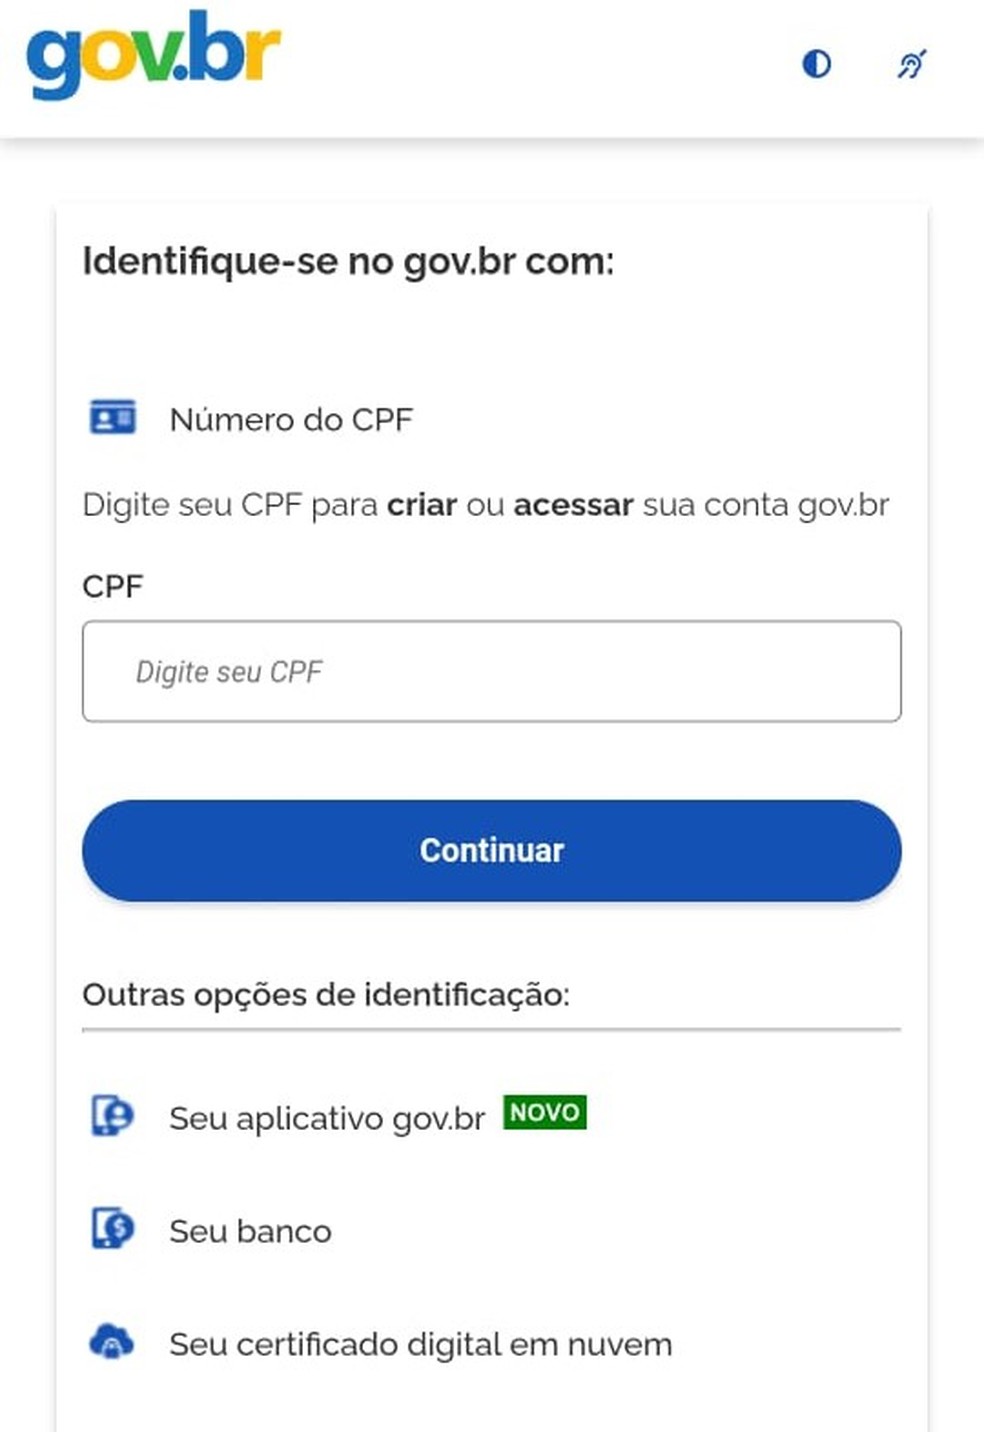 Conta gov.br dá acesso aos serviços digitais do governo  — Foto: Reprosução